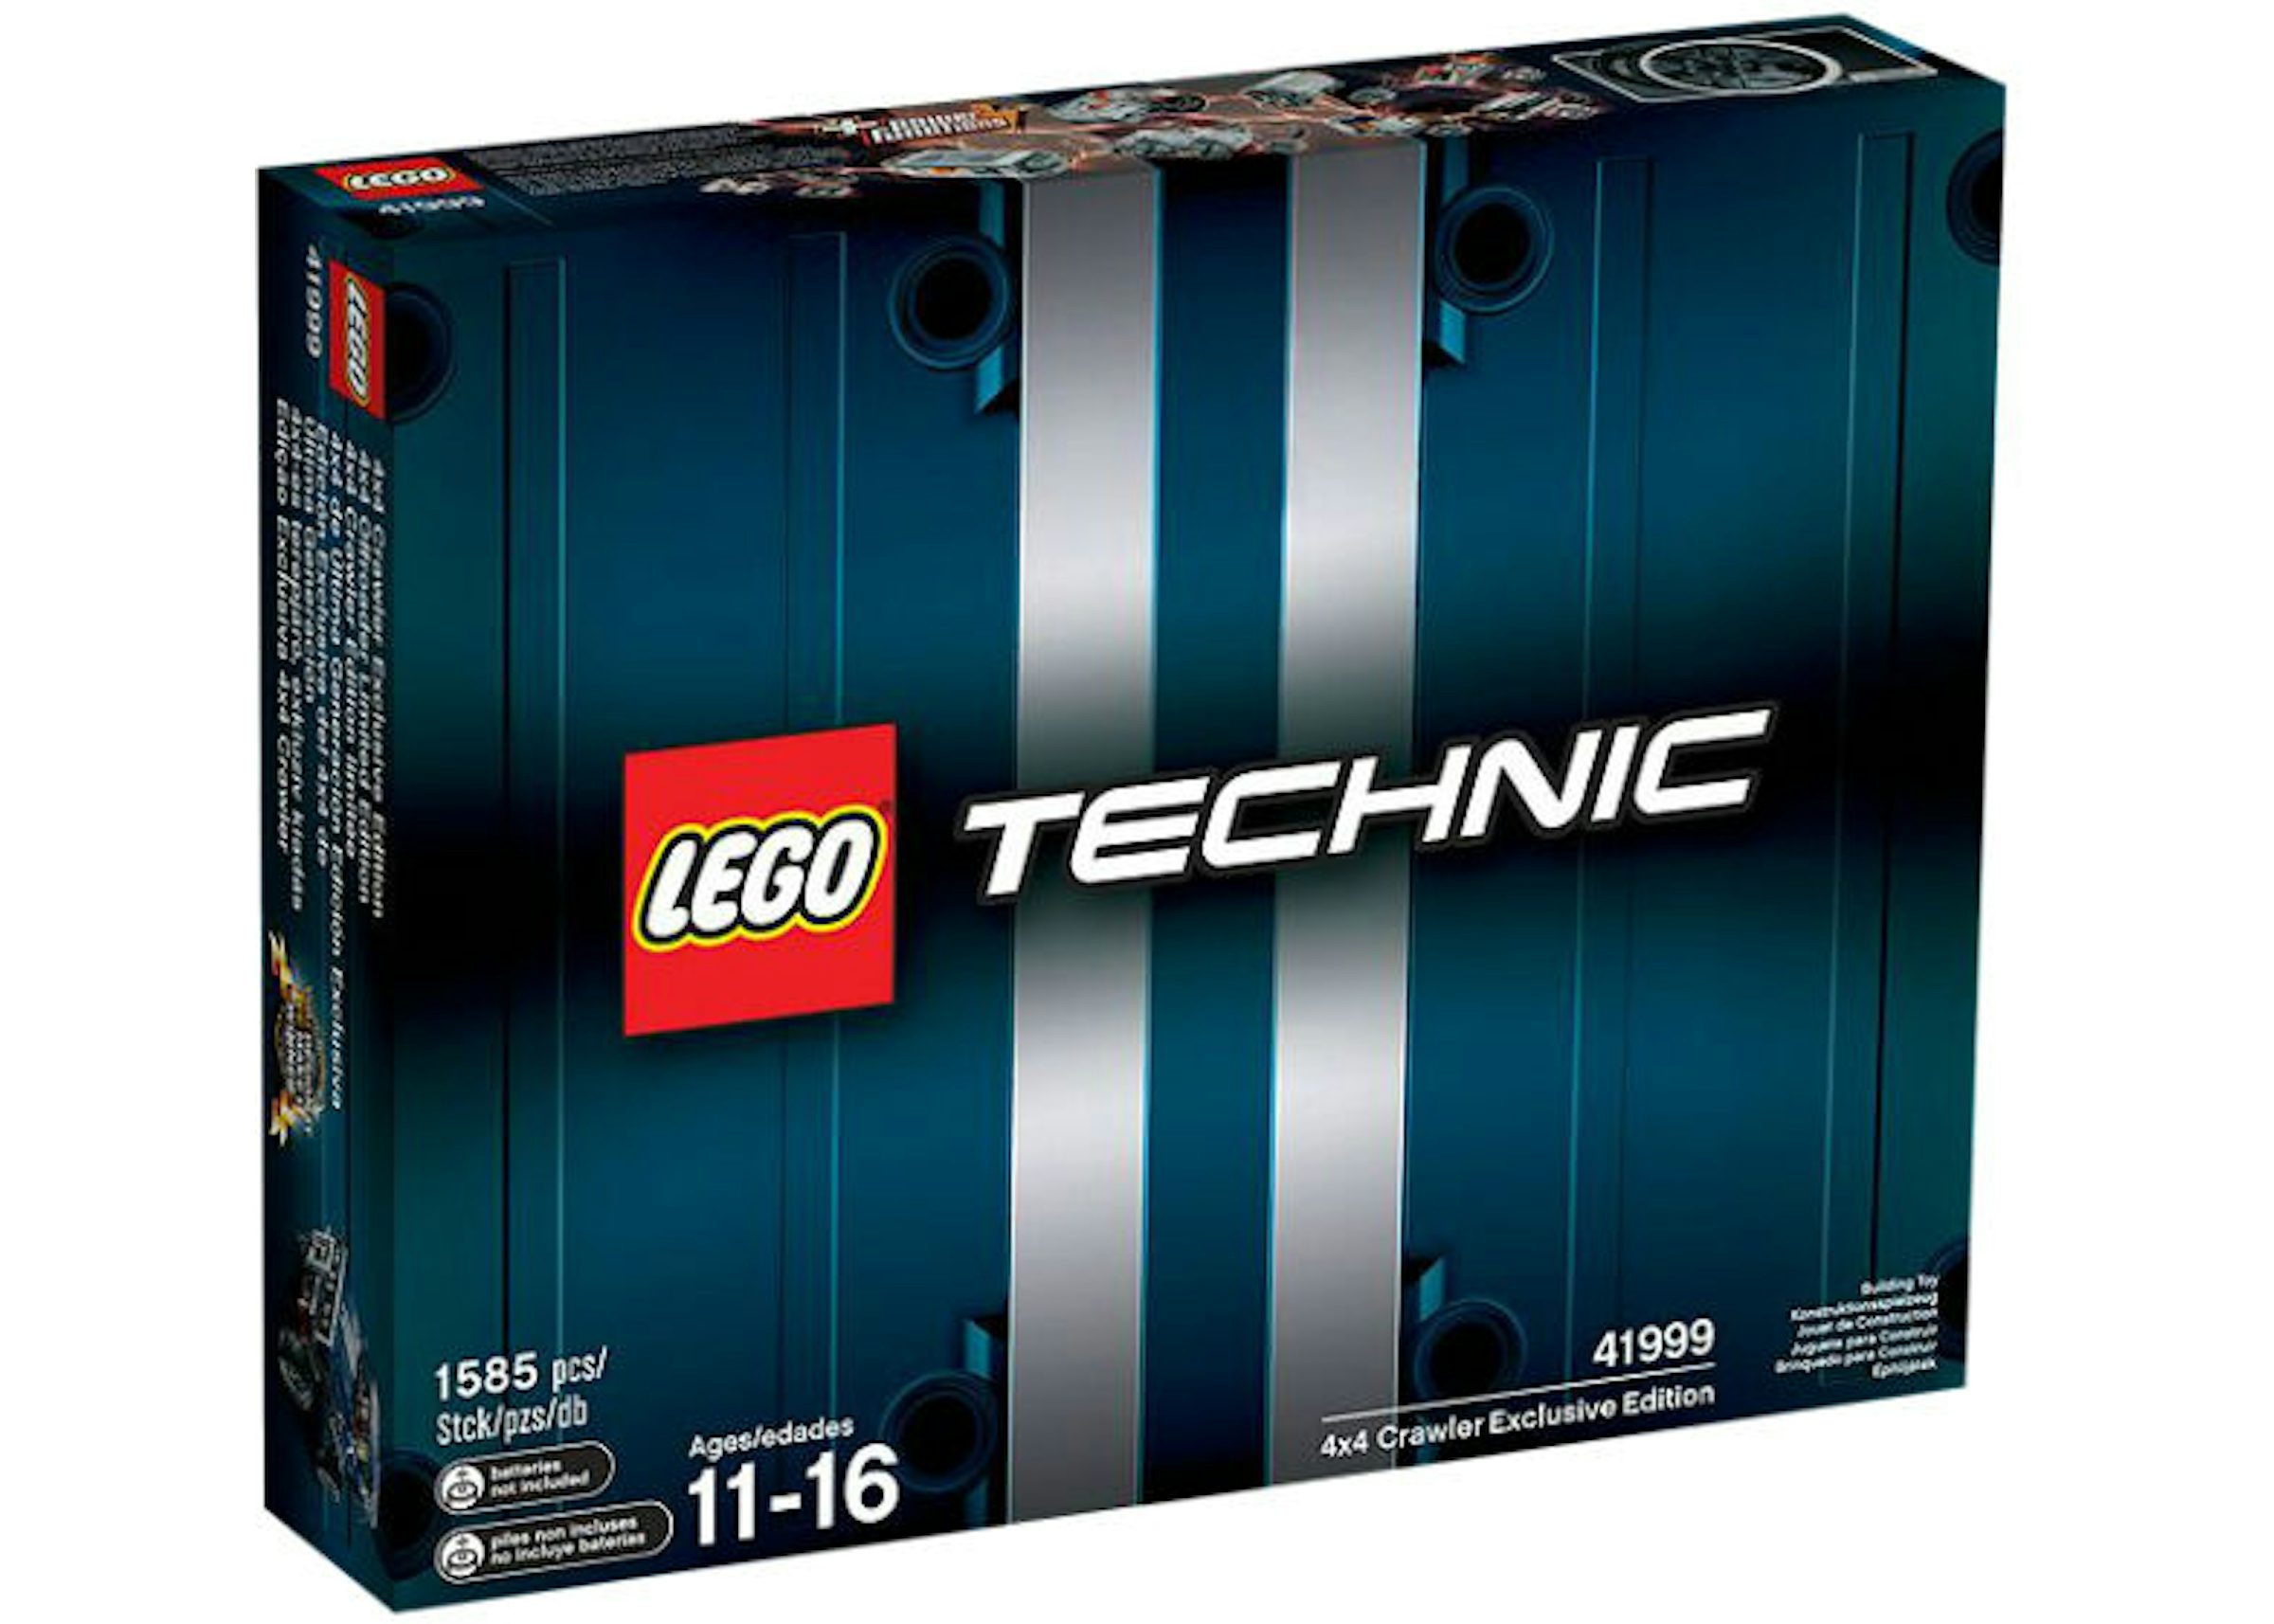 LEGO Technic 4x4 Crawler Edition - US